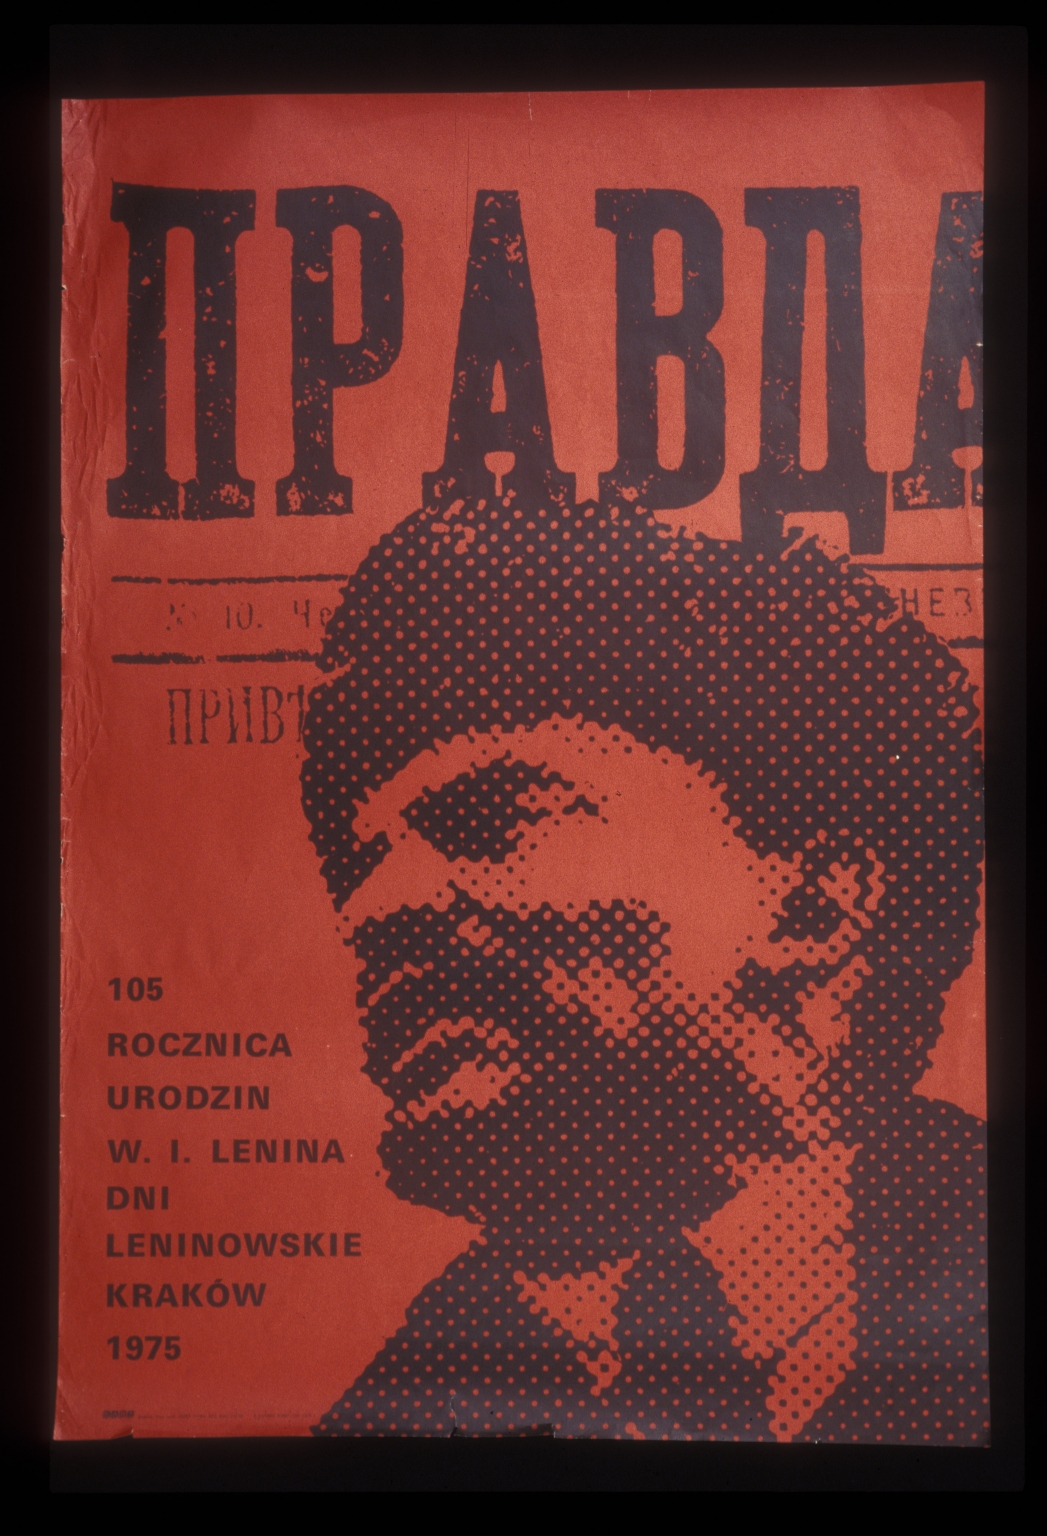 105 rocznica urodzin W I Lenina: dni Leninowskie, Krakow 1975